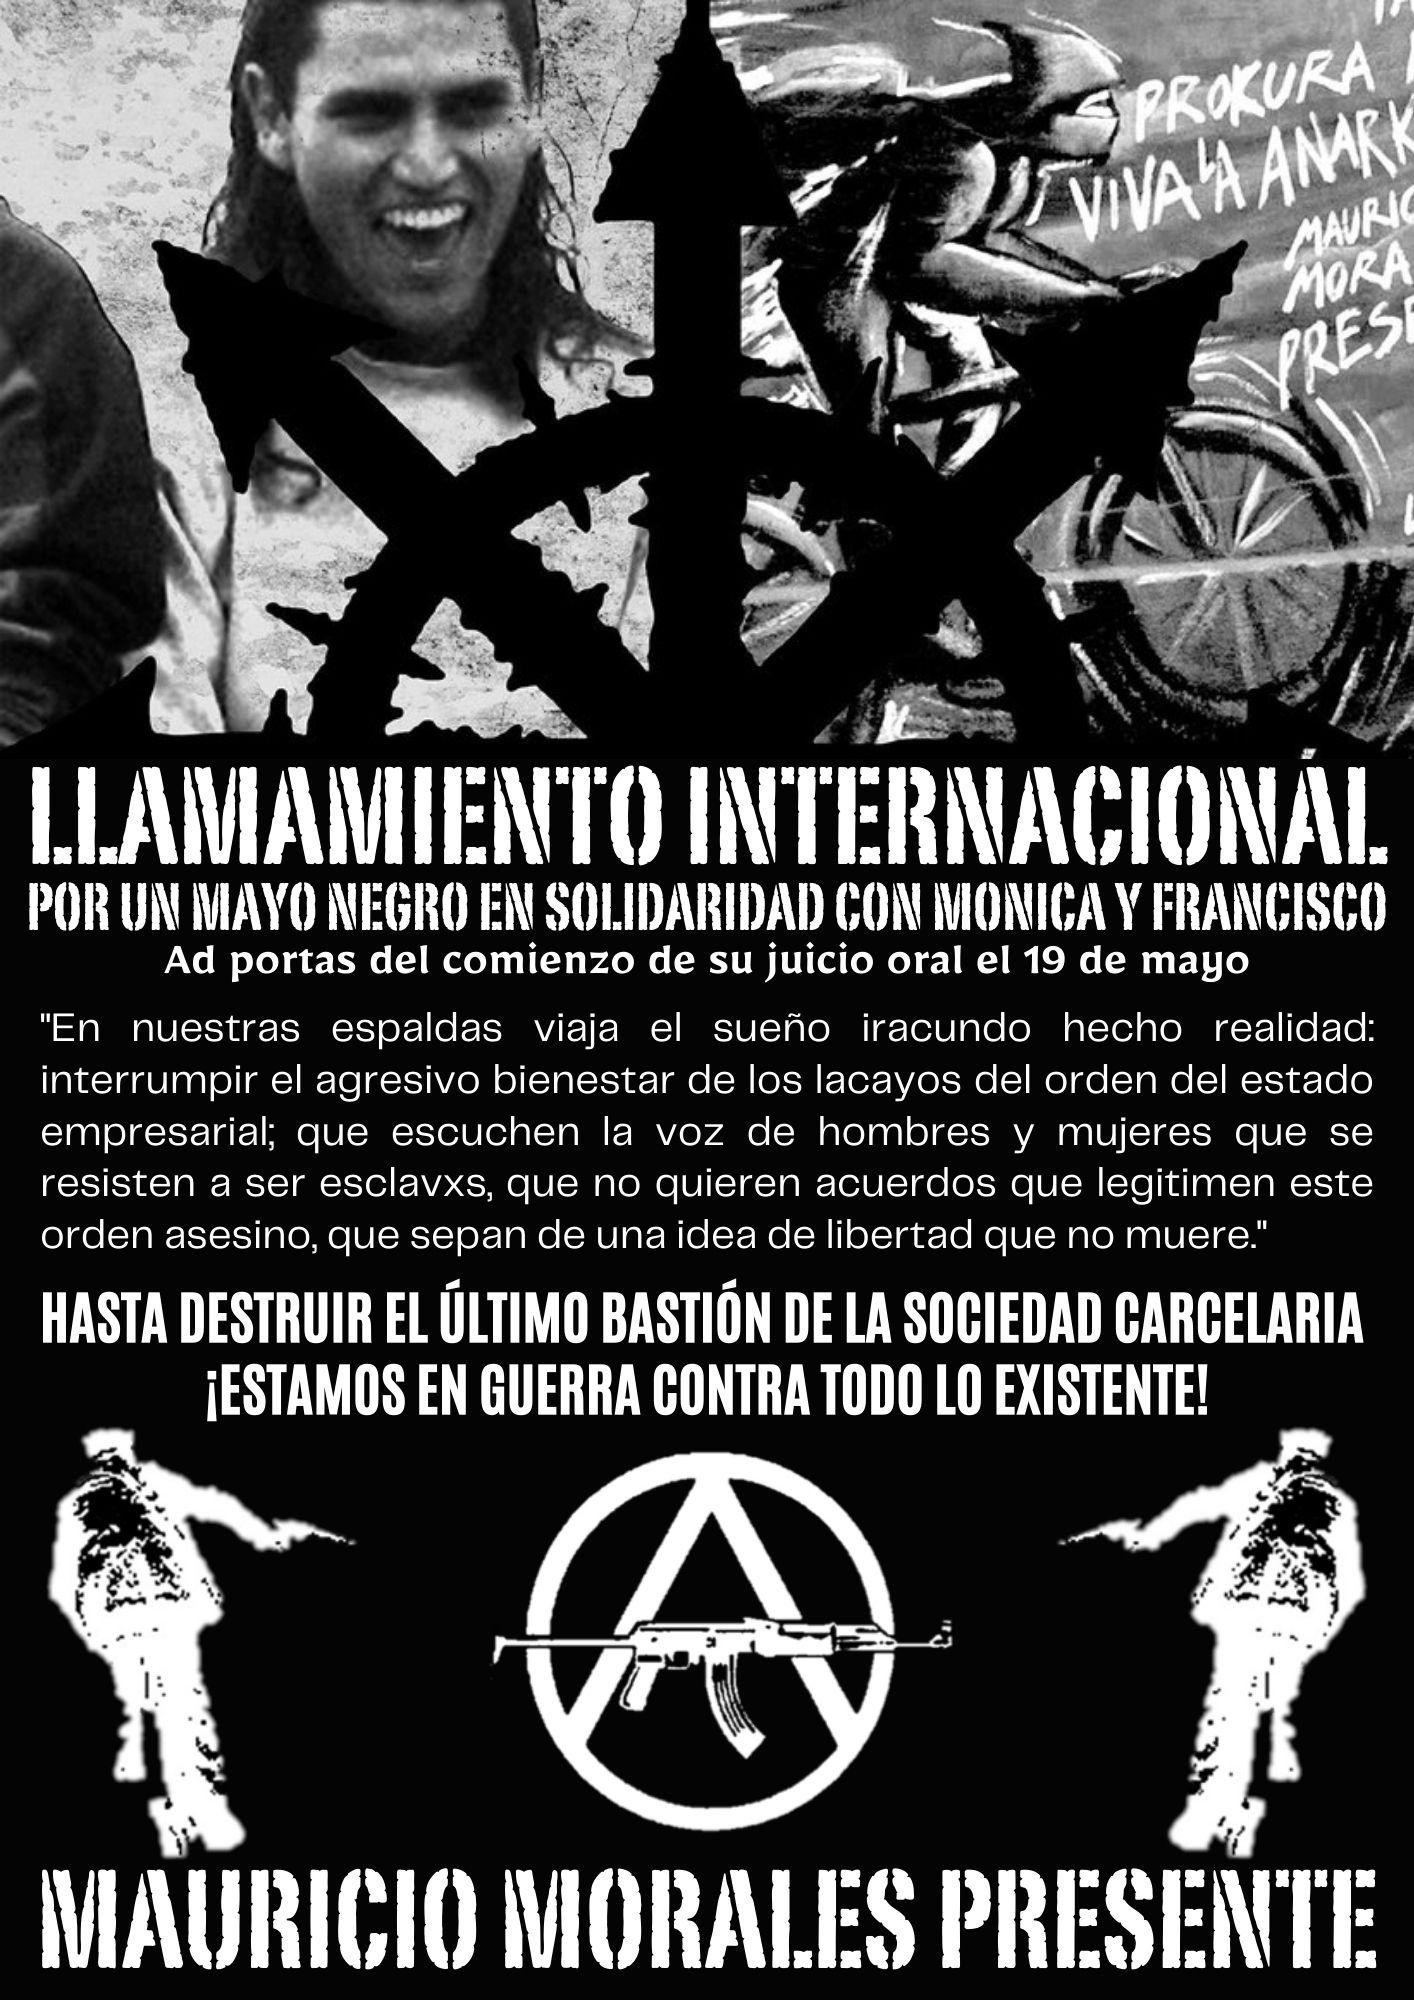 Santiago, $hile: reivindicación de salida incendiaria por dia del paco en la universidad Academia de humanismo cristiano + Llamamiento internacional a un Mayo Negro